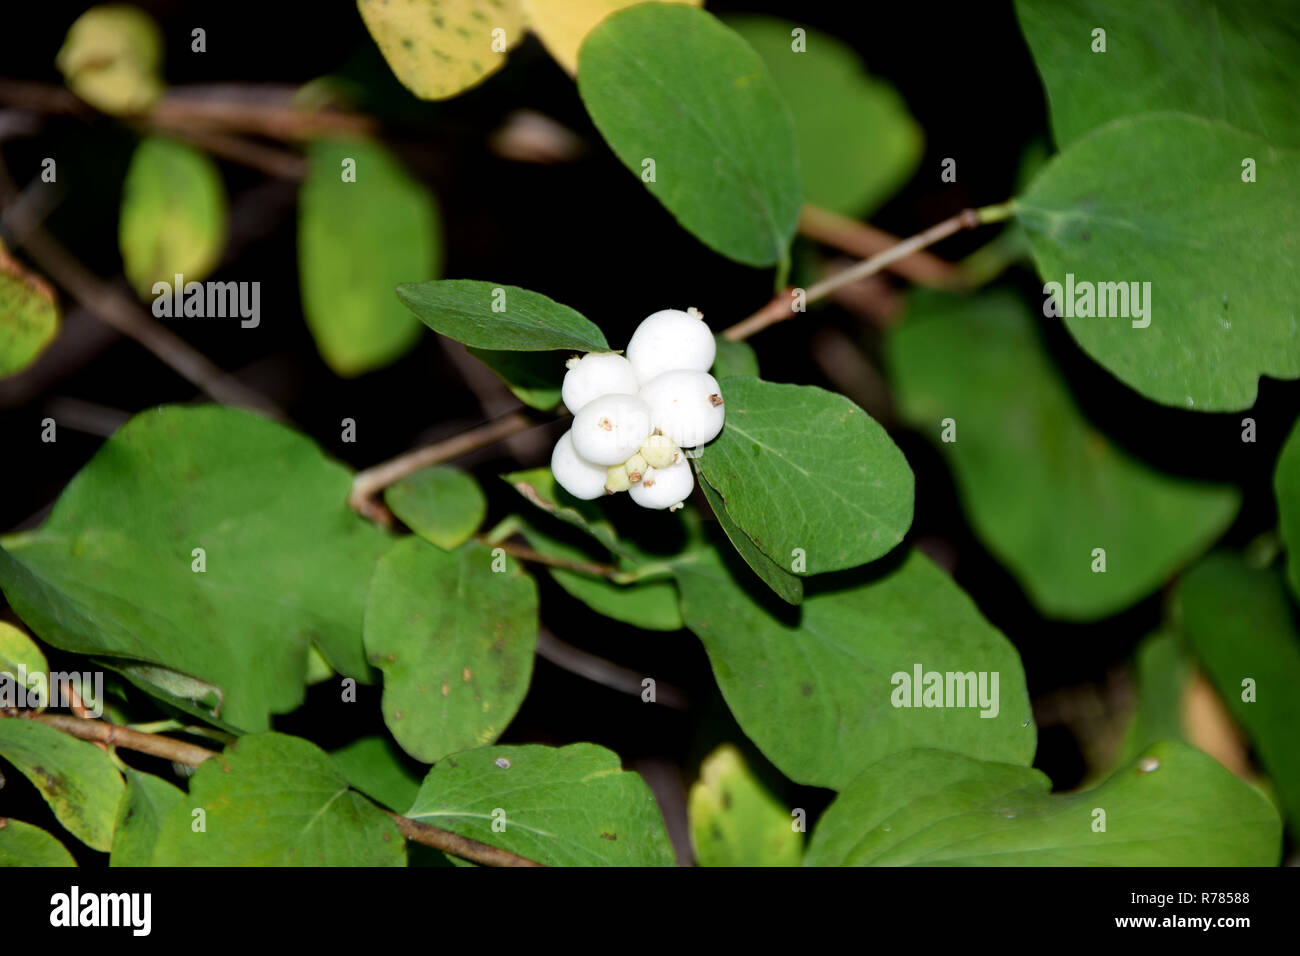 common snowberry, symphoricarpos albus bush in autumn with white berry-like drupes Stock Photo